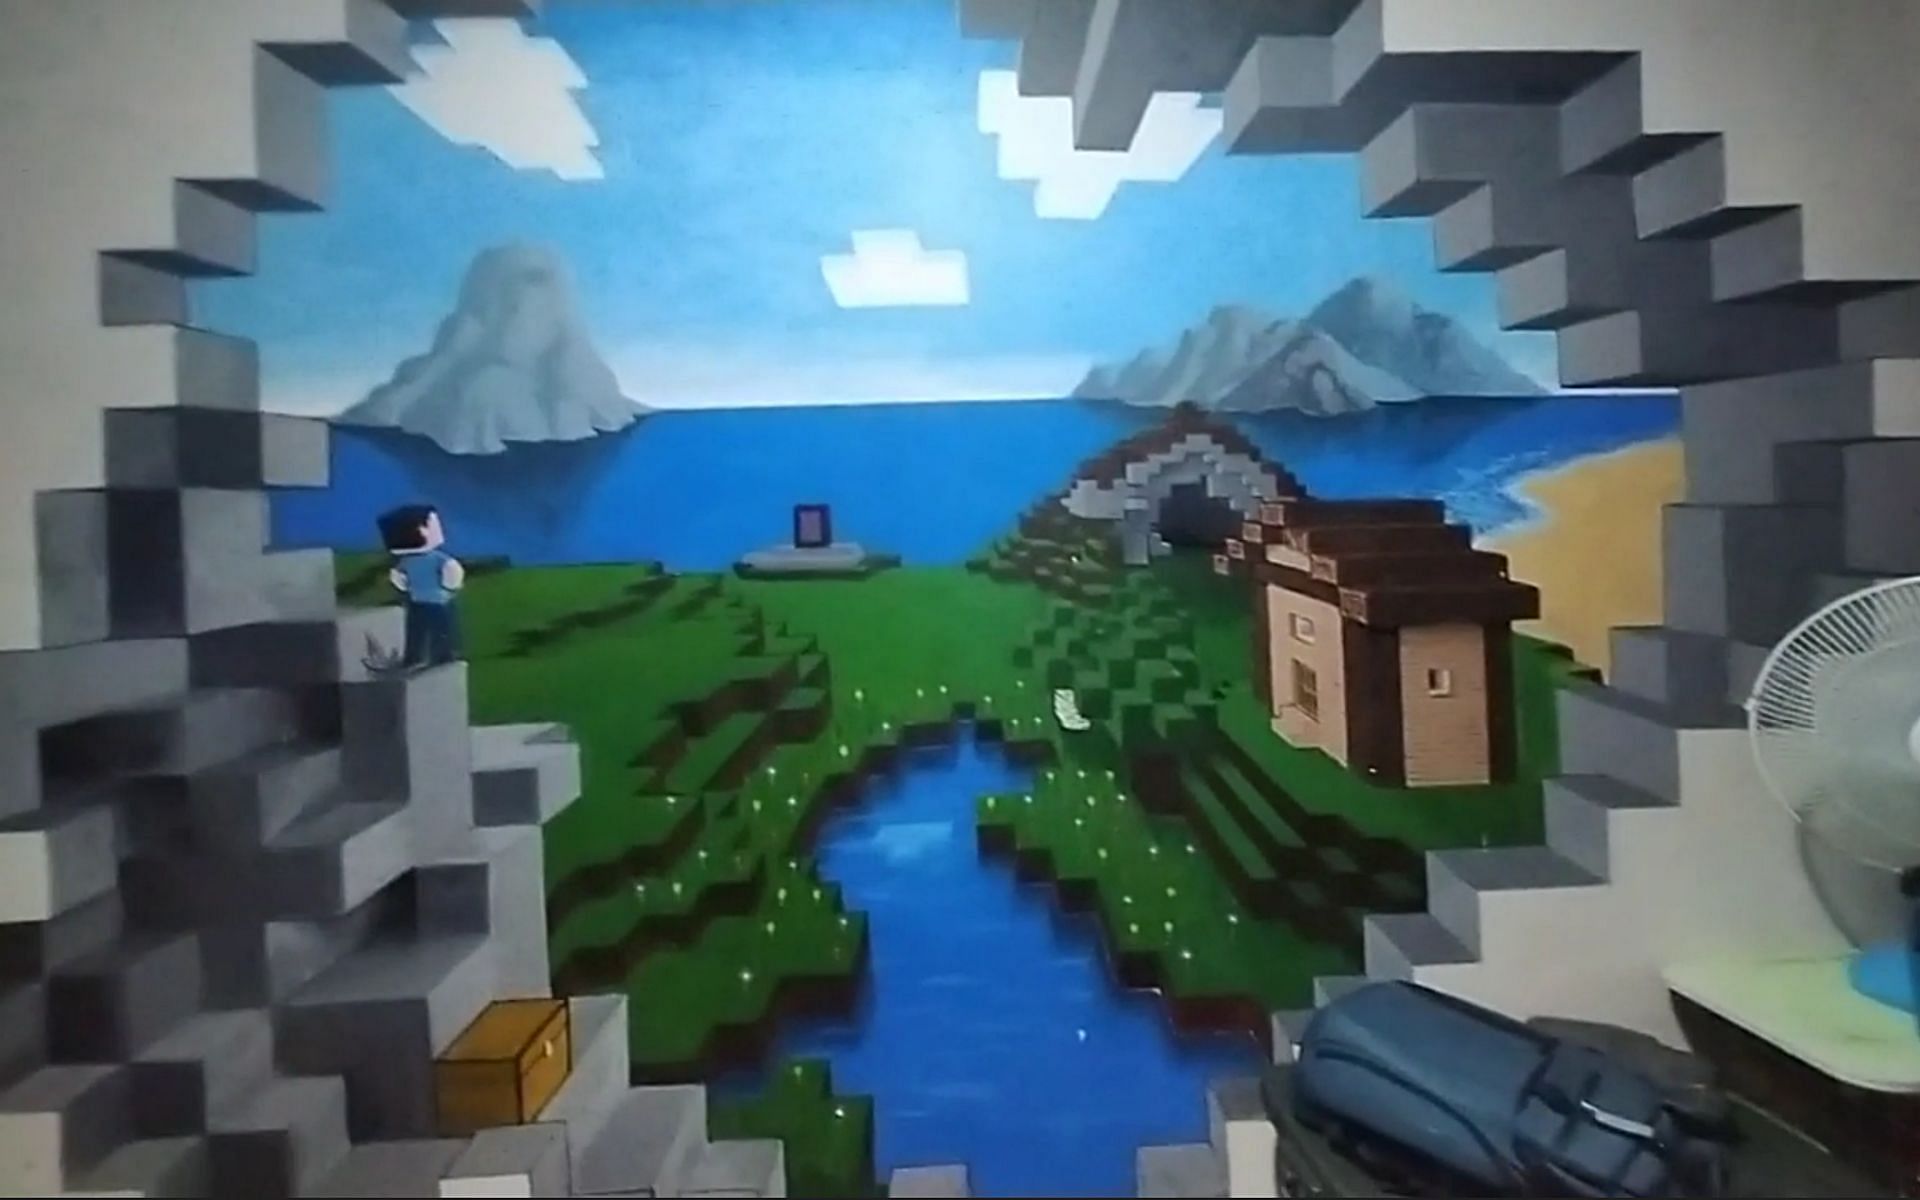 Wall painting of the game (Image via u/MonsieurBlue7 Reddit)